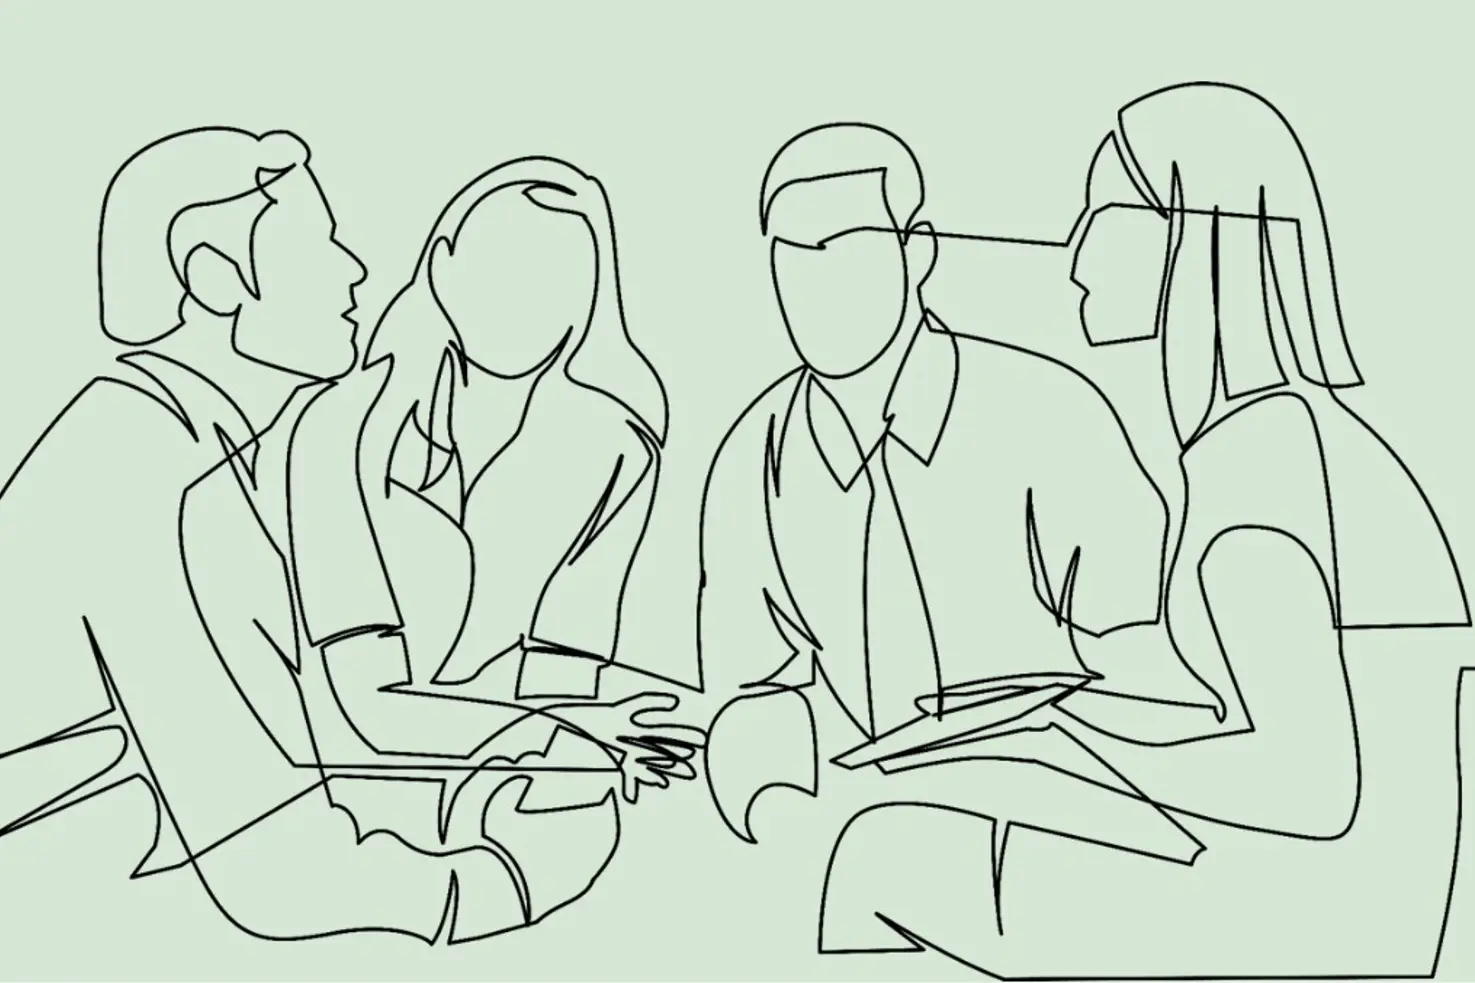 Illustrasjon av en gruppe mennesker som sitter og snakker sammen. To menn og to damer.